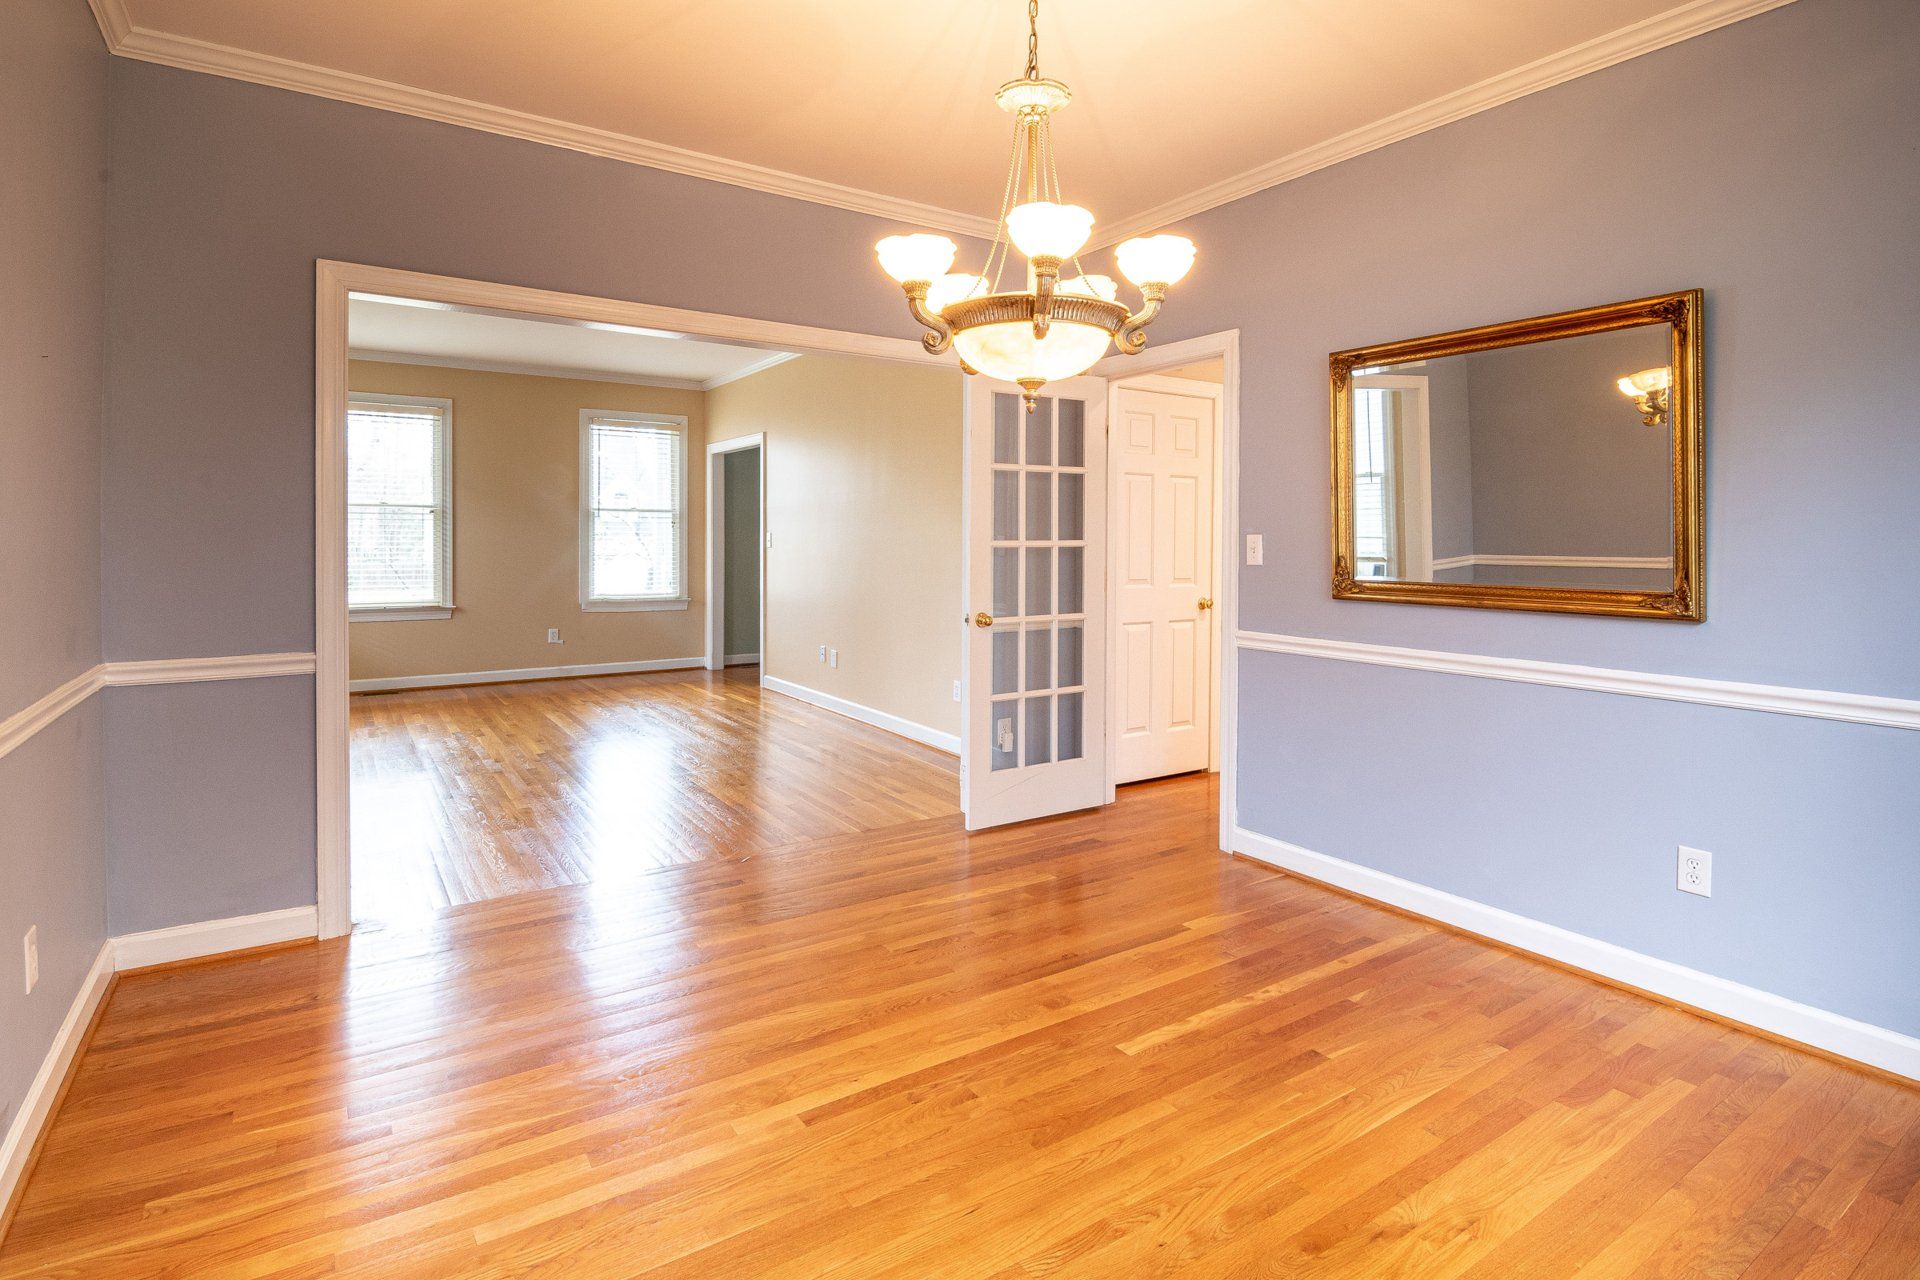 Marlborough, MA home with refinished hardwood floors